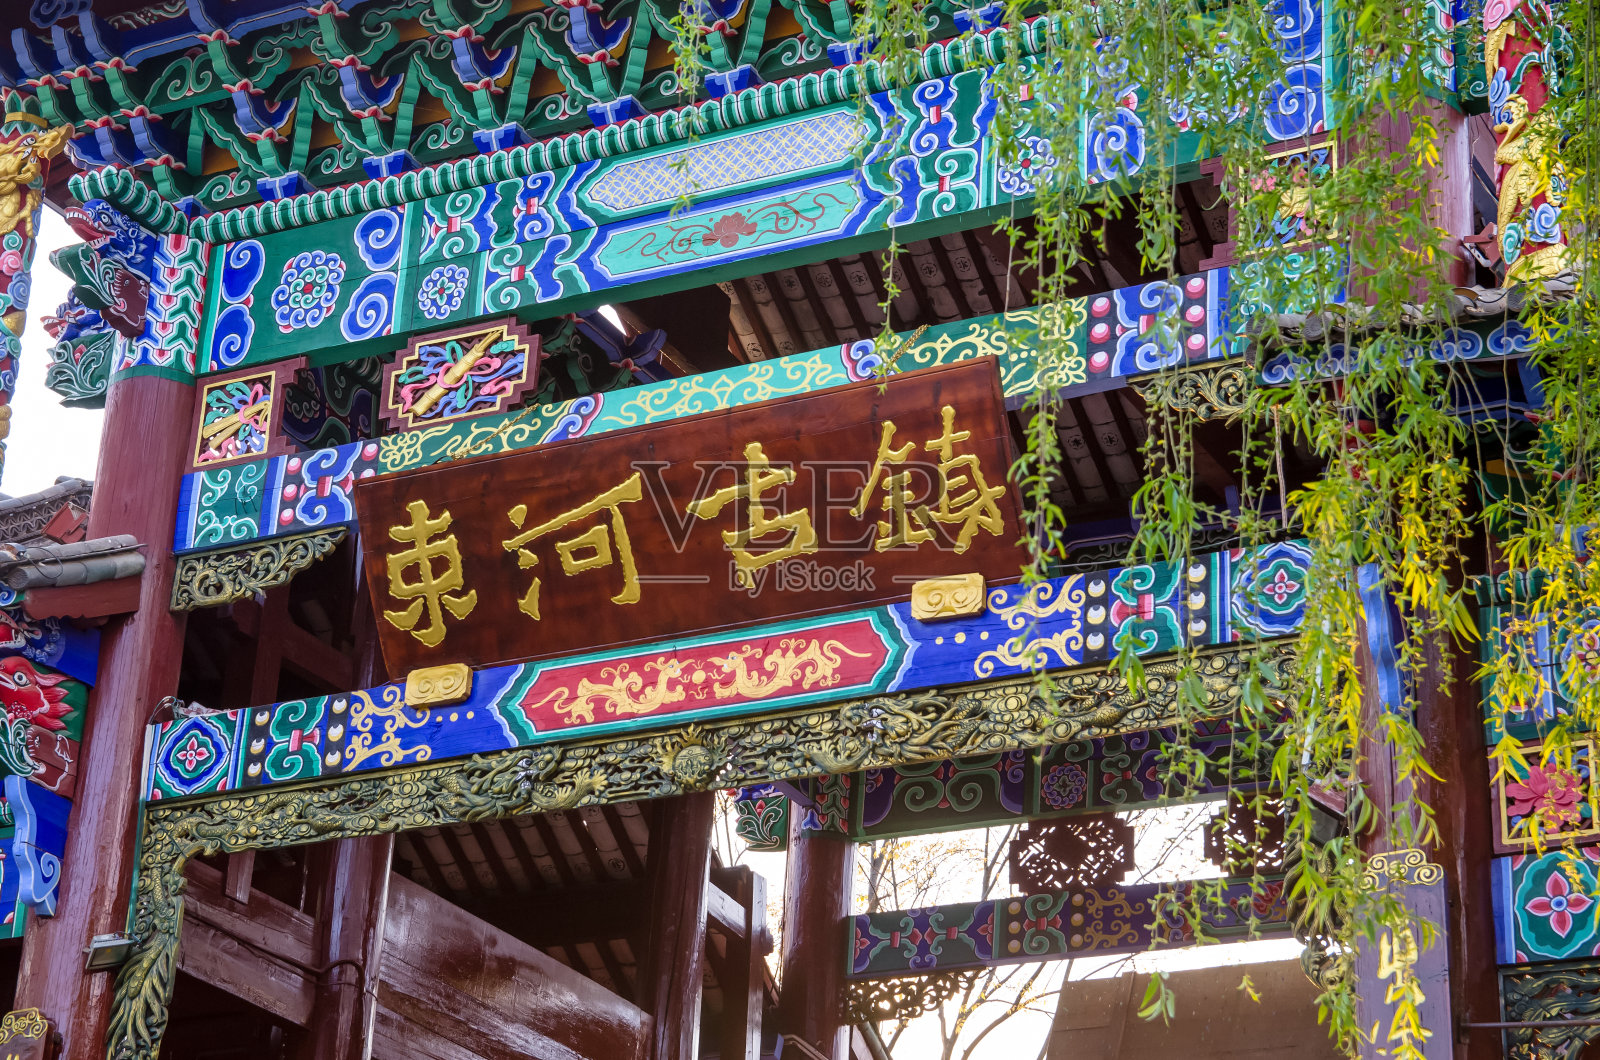 束河古镇是丽江最古老的栖息地之一，也是古茶之路上保存完好的古镇。照片摄影图片